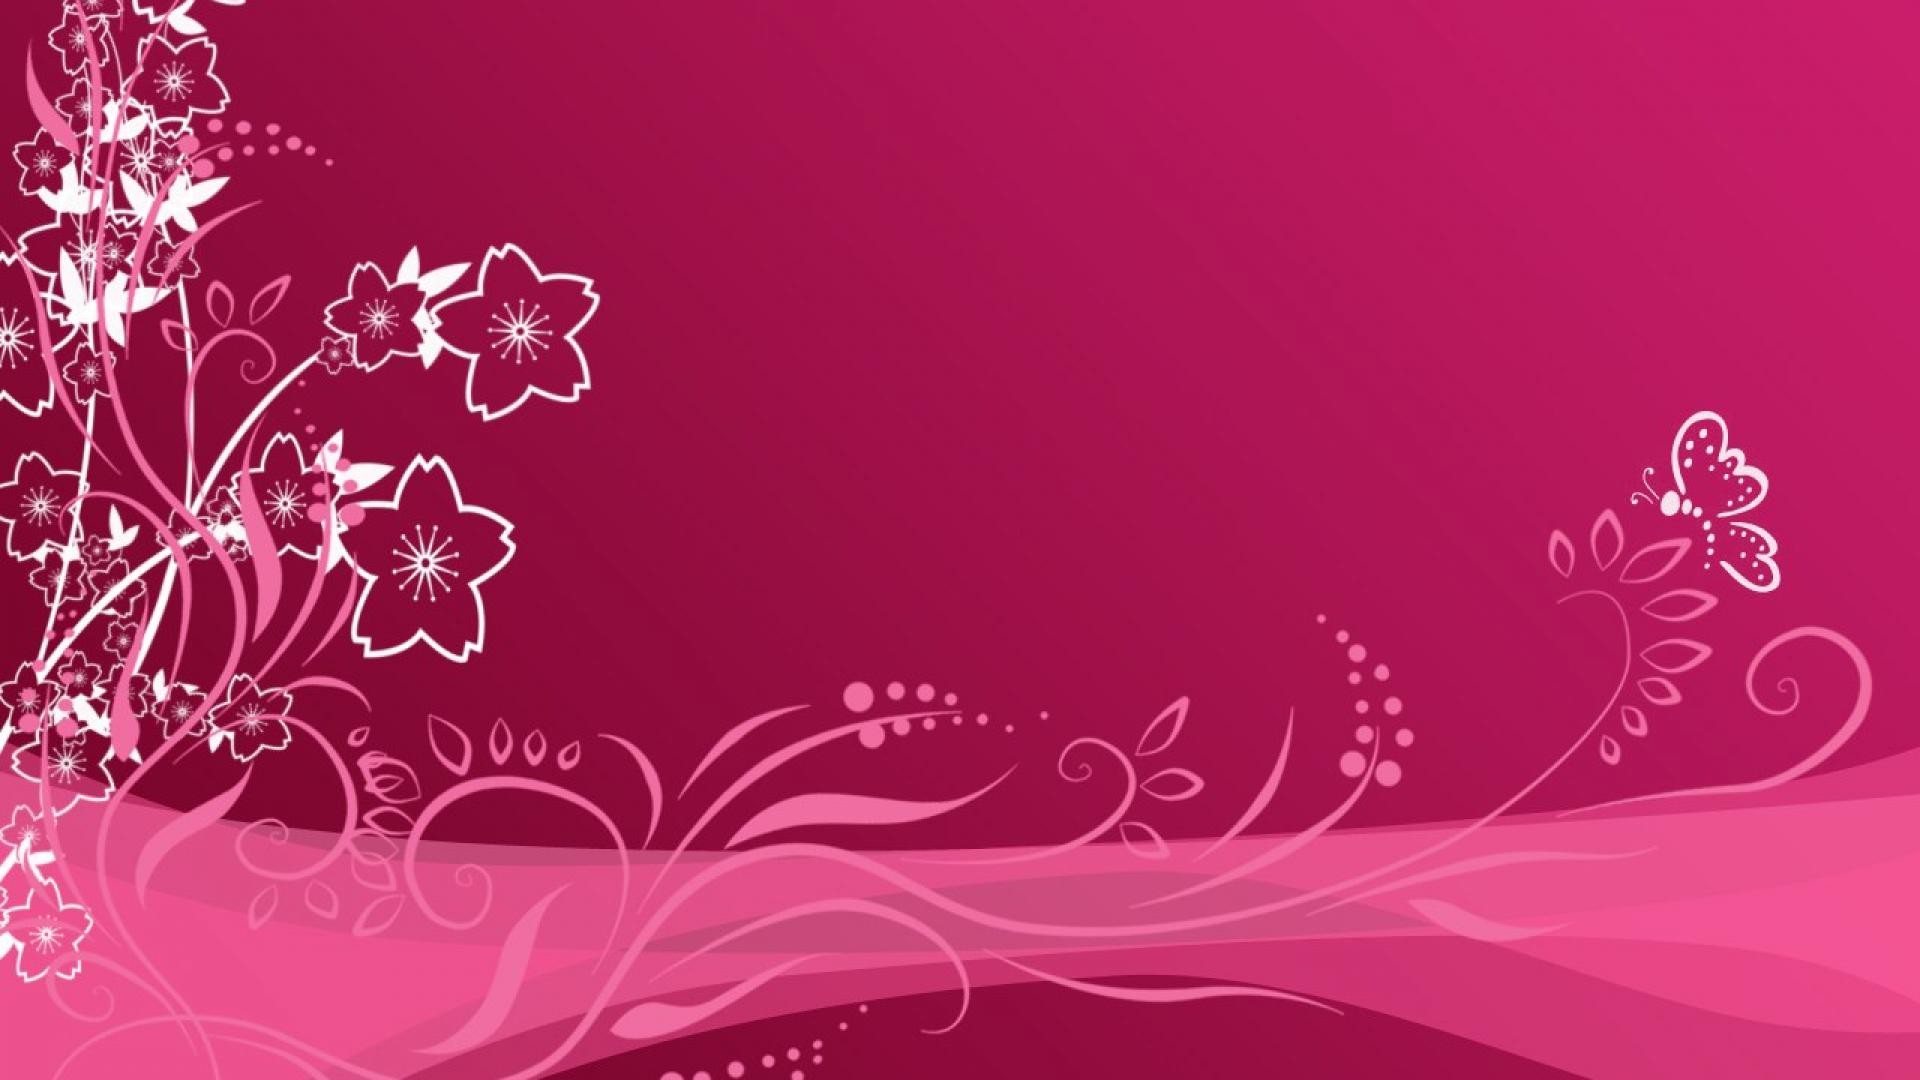 sfondo del desktop girly,rosa,testo,viola,disegno floreale,font